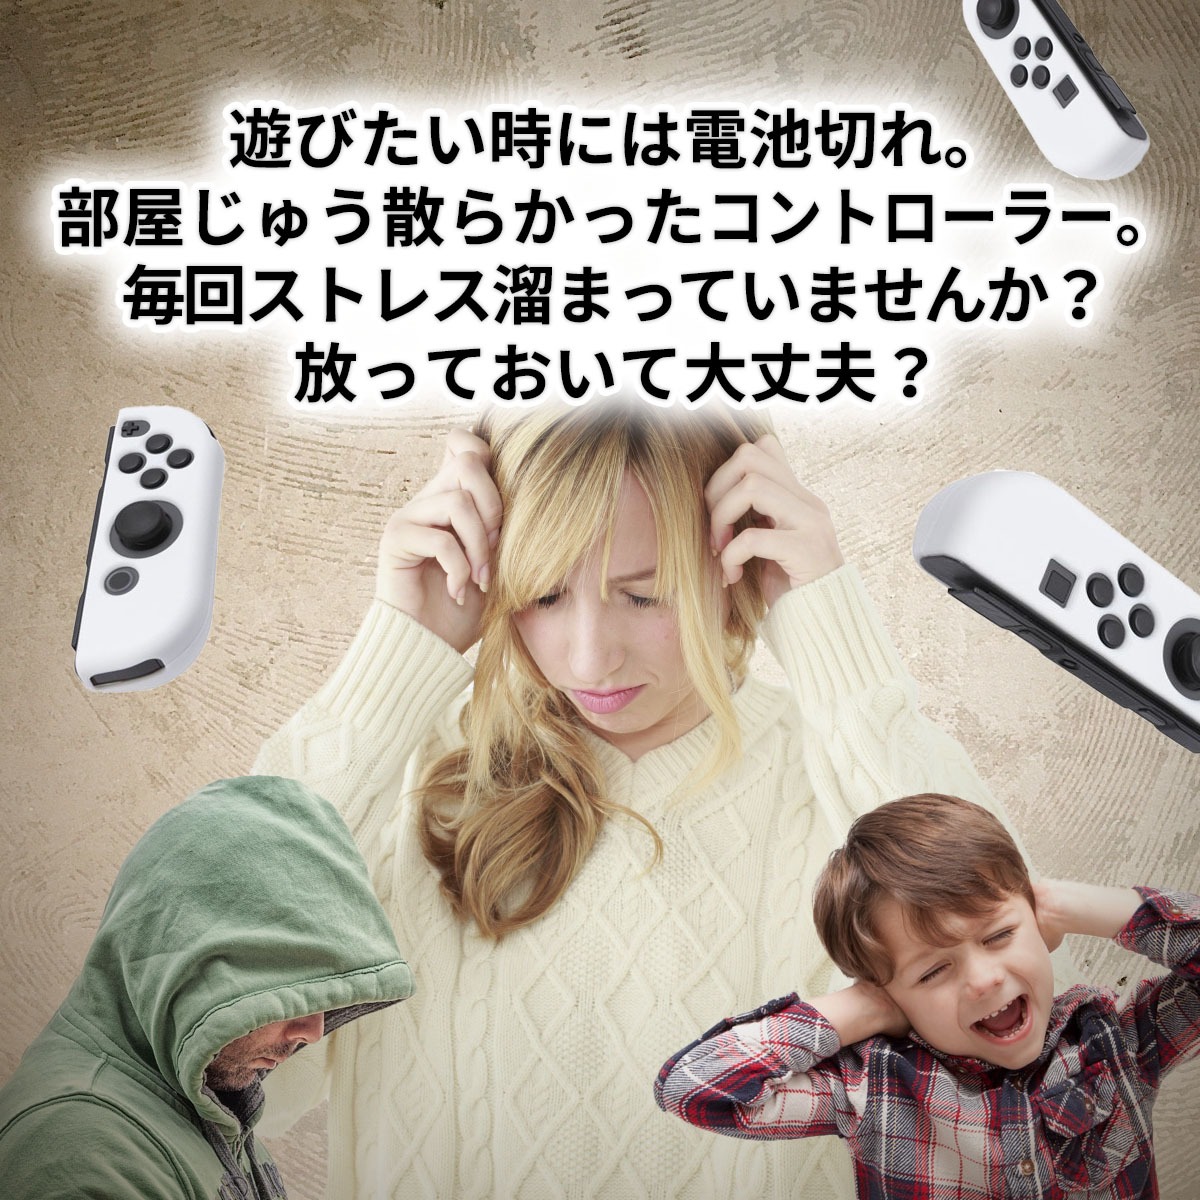 限定SALEお得[4A-46-001-1] 任天堂 新型Nintendo Switch ニンテンドースイッチ JOY-CON(L) ネオンブルー/(R) ネオンレッド 動作確認済 中古 ニンテンドースイッチ本体